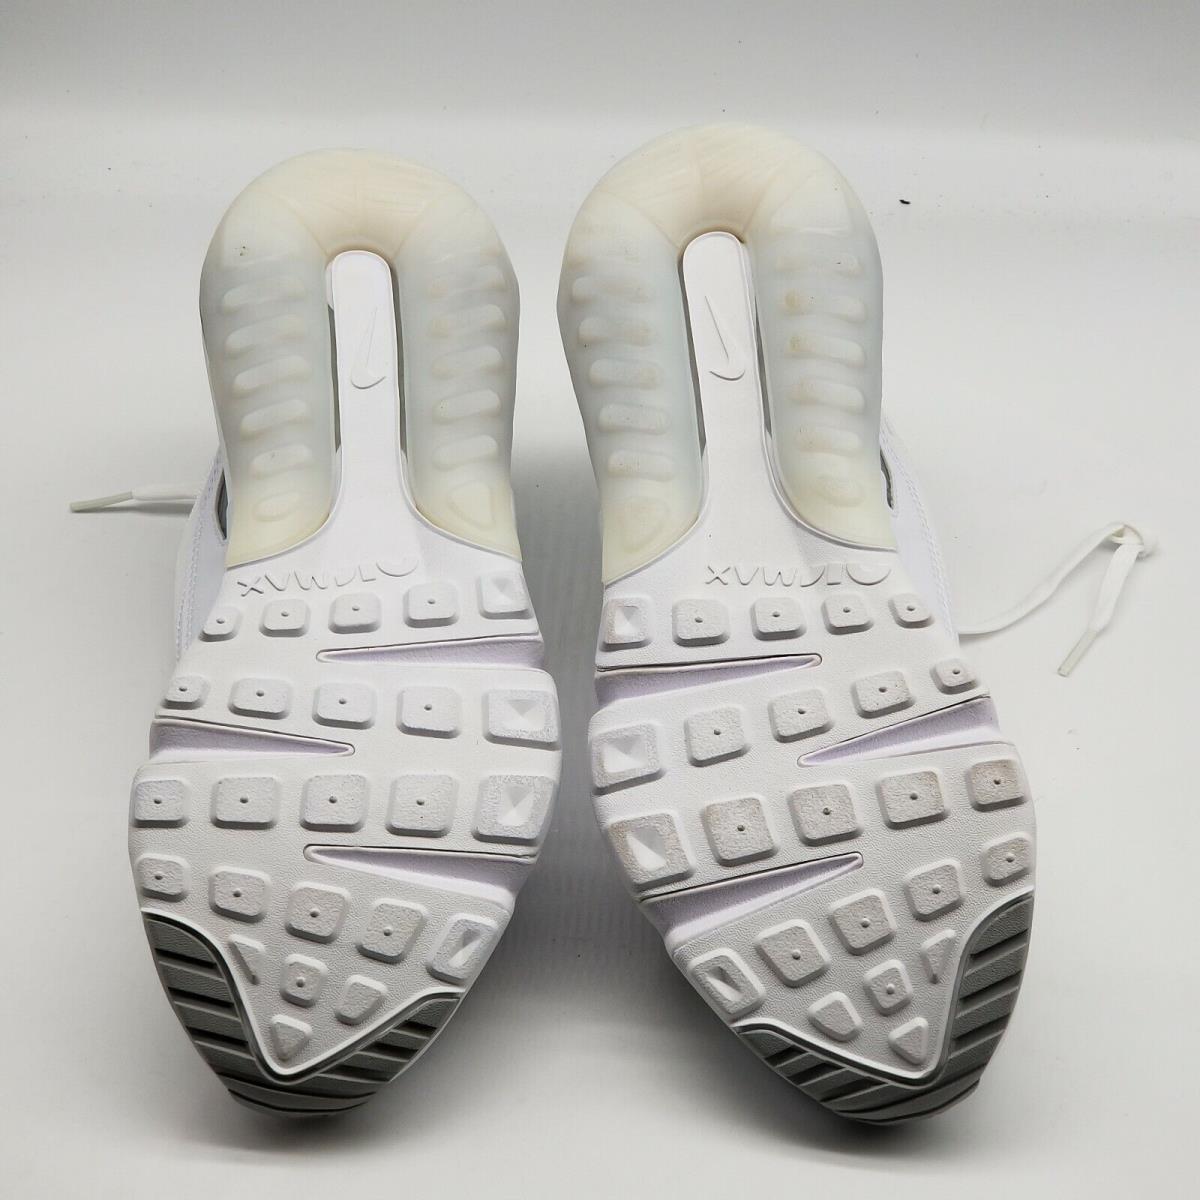 Nike shoes Air Max - White 3